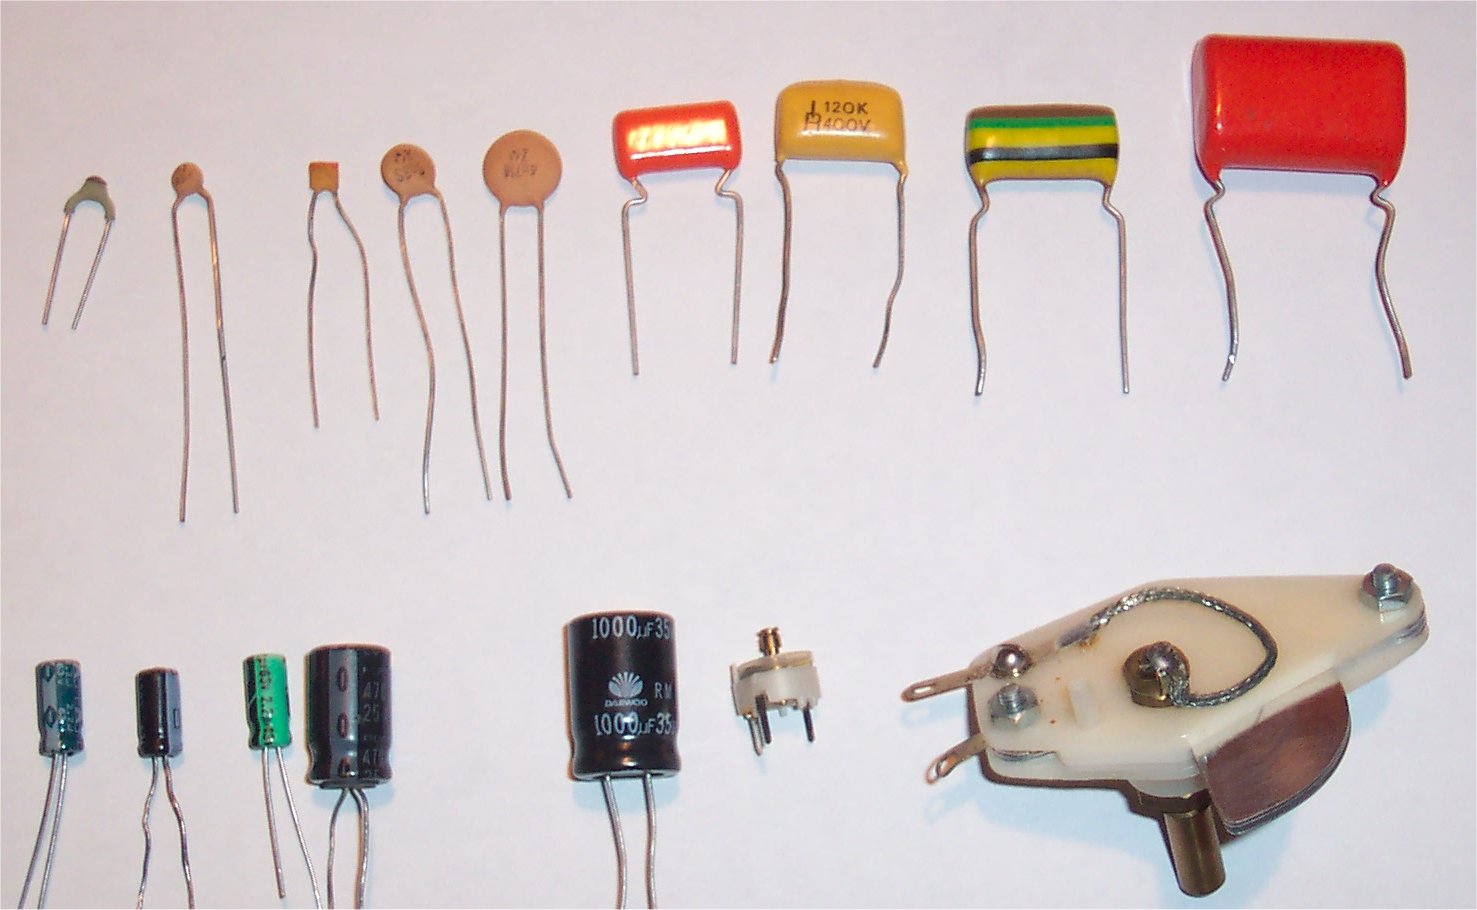 Electrónica Facil - Los componentes electrónicos básicamente se